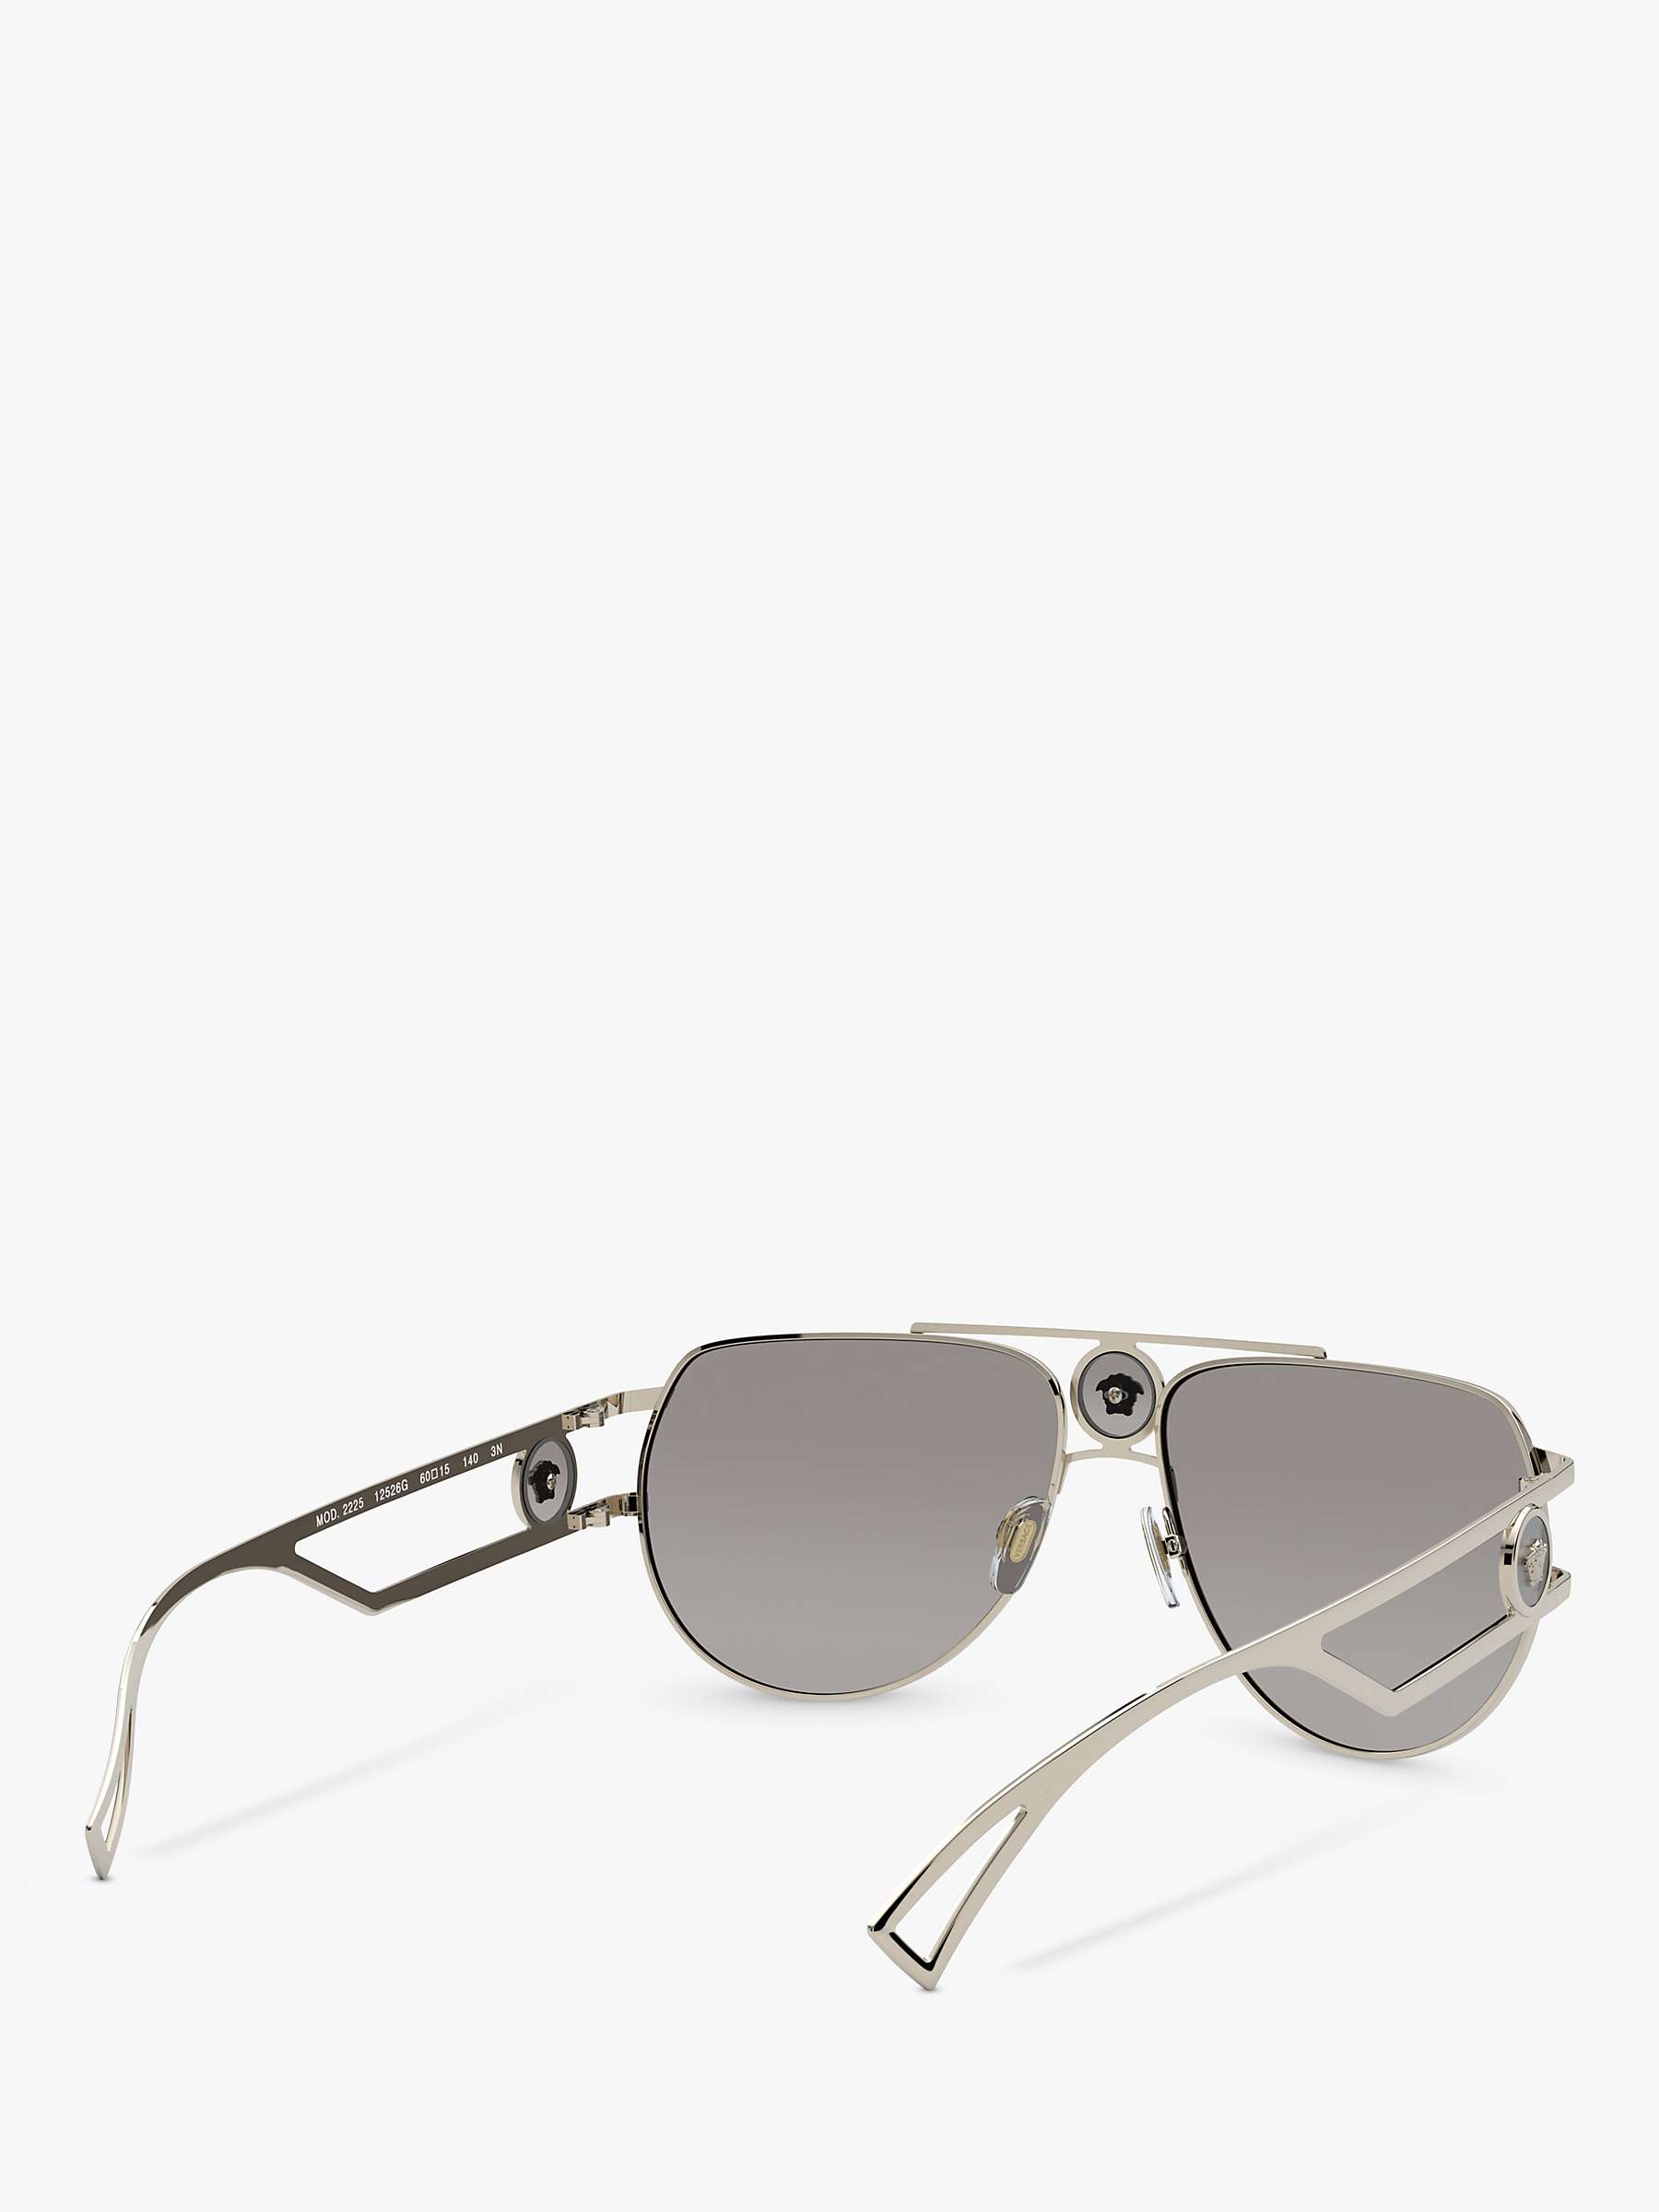 Buy Versace VE2225 Men's Pilot Sunglasses, Pale Gold Online at johnlewis.com